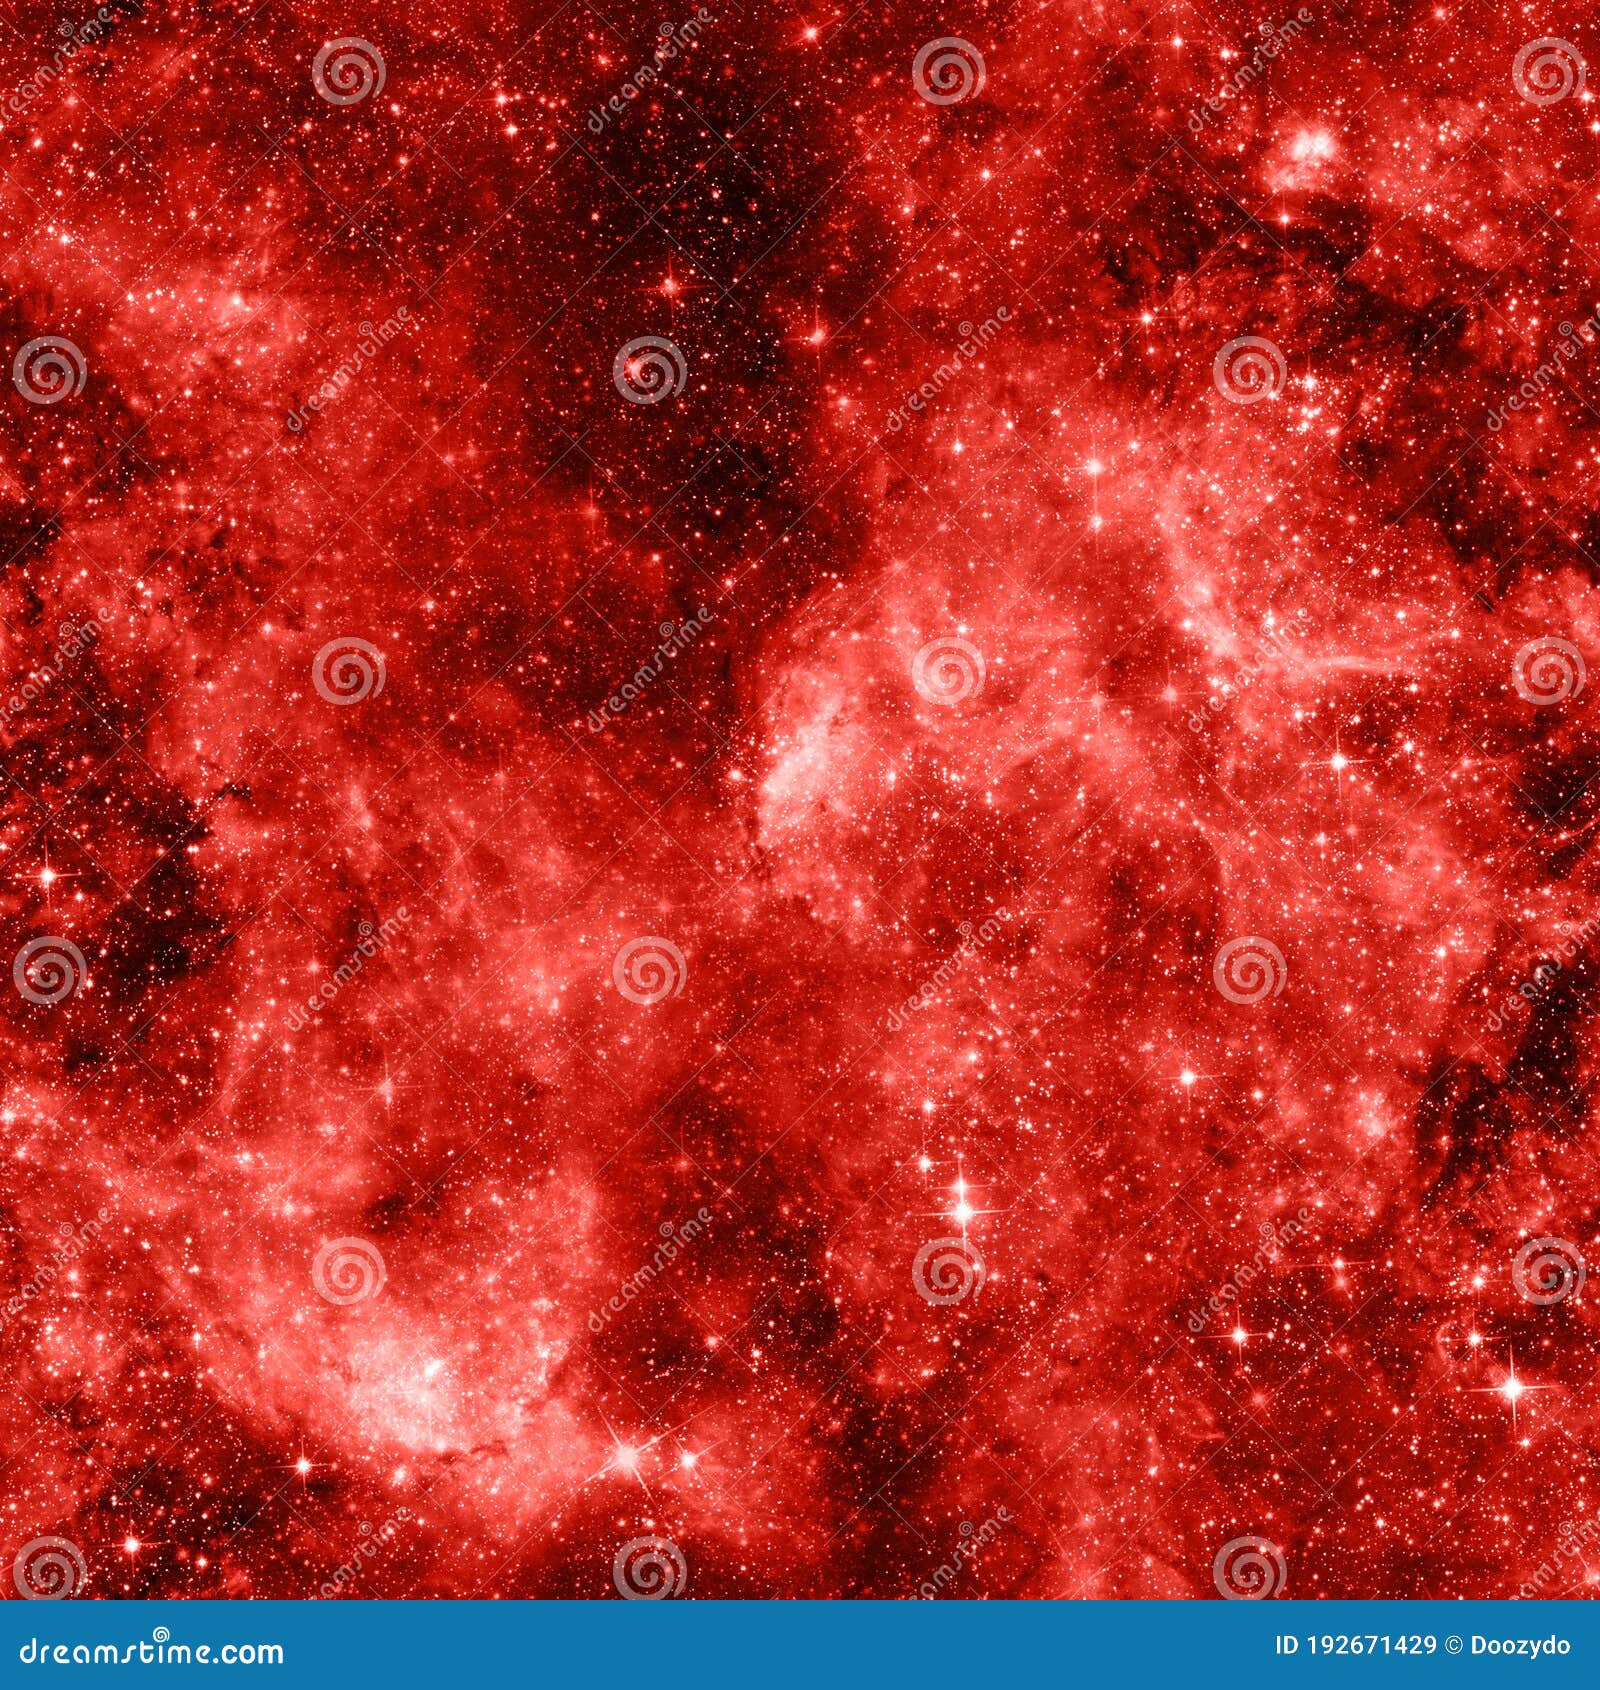 Vẻ đẹp khó cưỡng của một bức hình nền thiên hà trừu tượng màu đỏ sẽ khiến bạn yêu thích nó ngay lập tức. Đó là một sự kết hợp đầy mạnh mẽ giữa màu đỏ và các hoa văn đặc trưng của sao chổi.